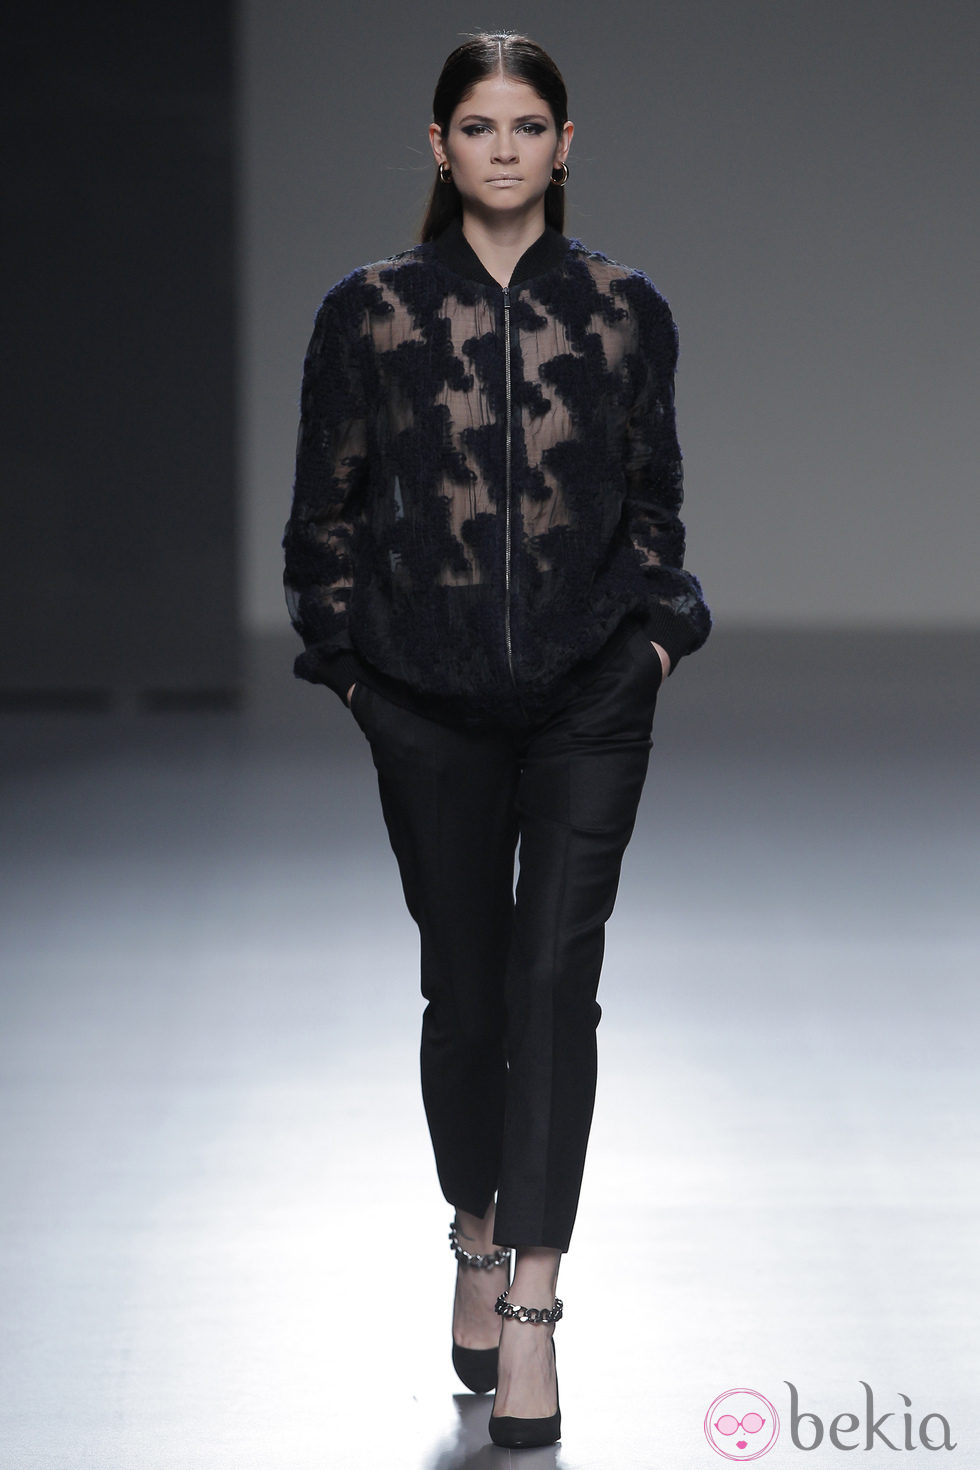 Camisa con transparencias de la colección otoño/invierno 2013/2014 de Ángel Schlesser en Madrid Fashion Week